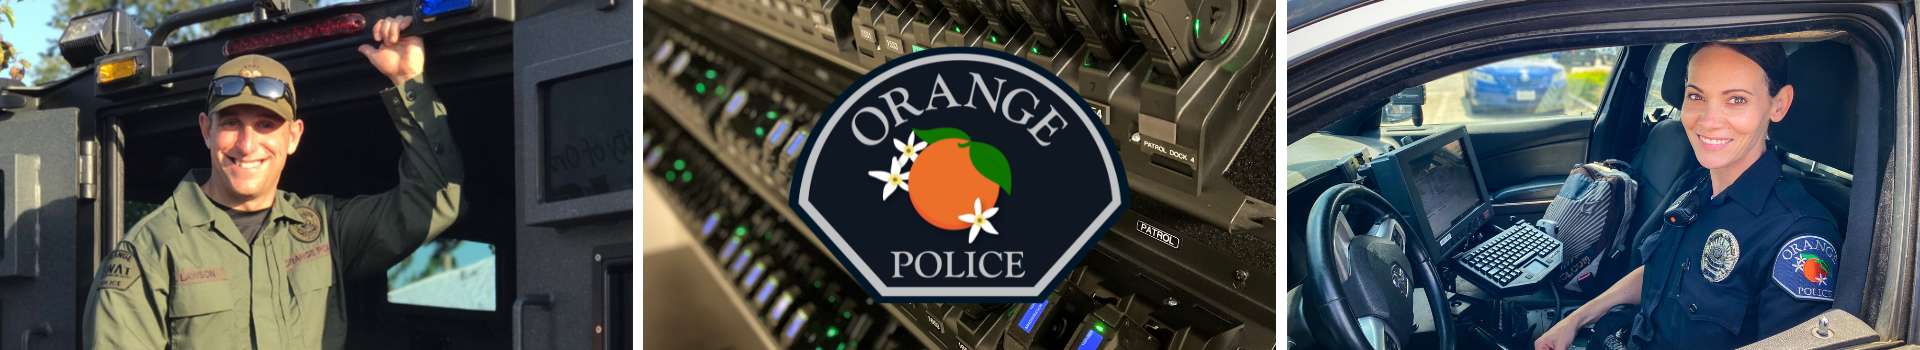 Orange Police Department